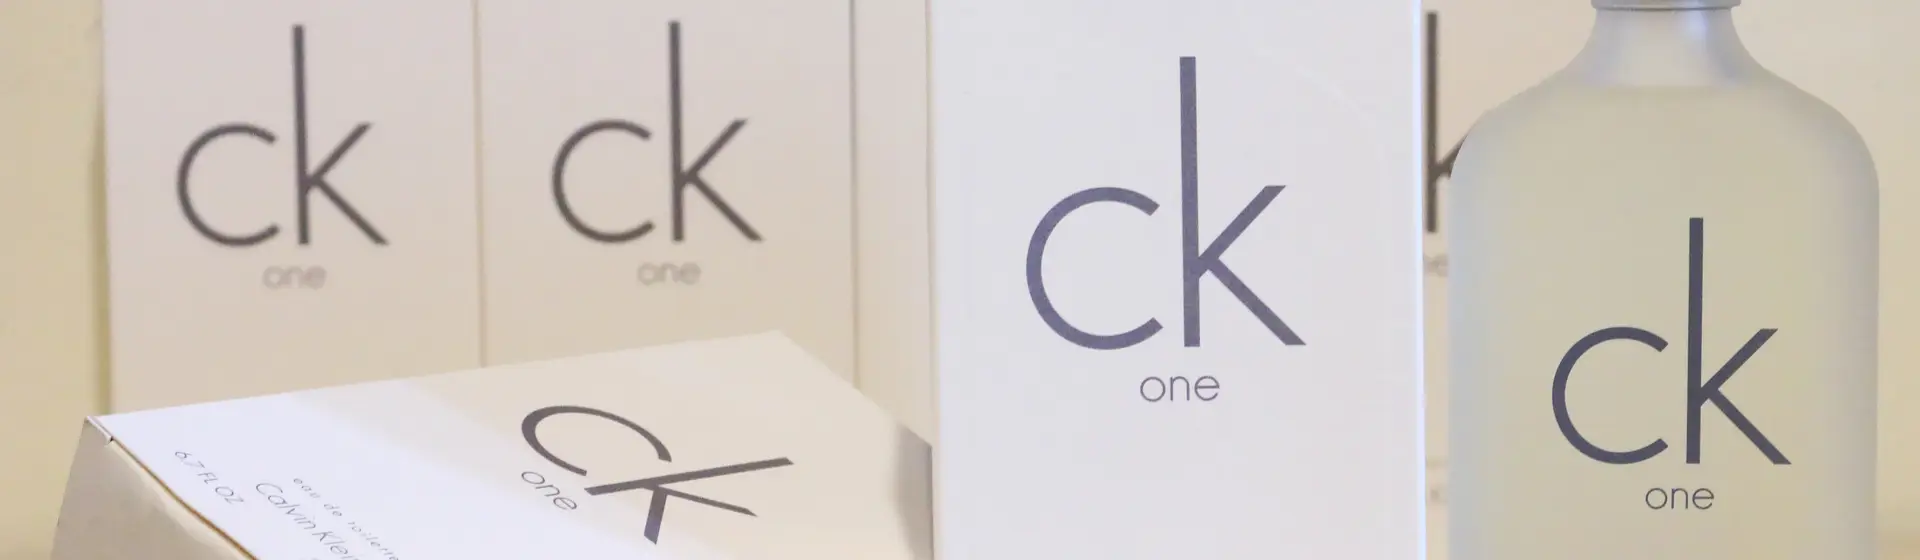 Calvin Klein Ck One Eau de Toilette 15 ml for men at Parfum-online.ch